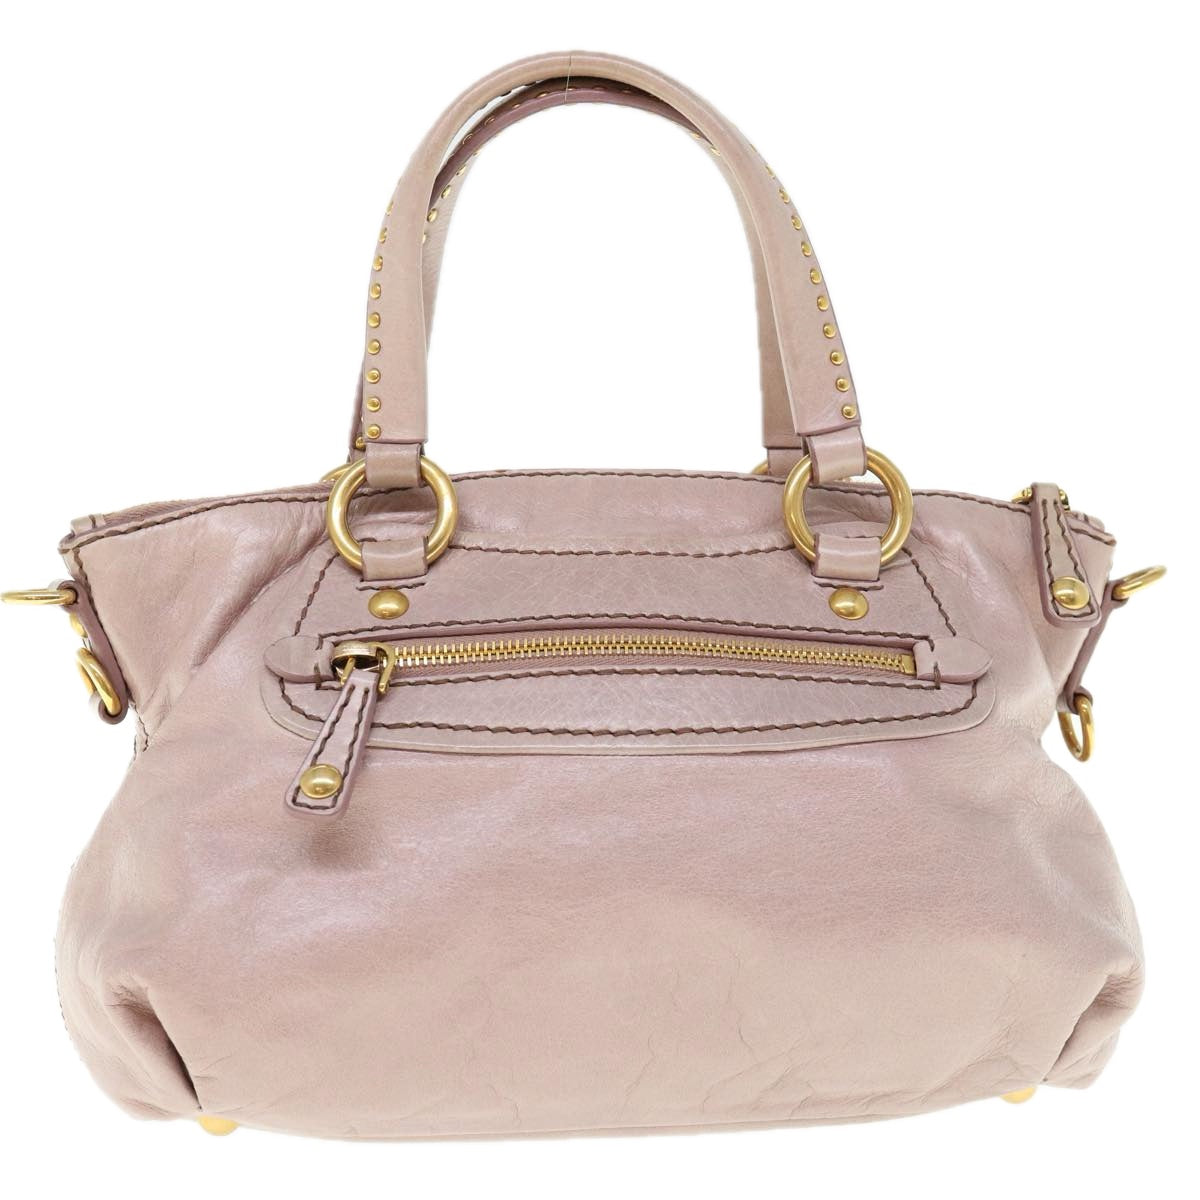 Miu Miu Hand Bag Leather 2way Pink Auth 64773 - 0